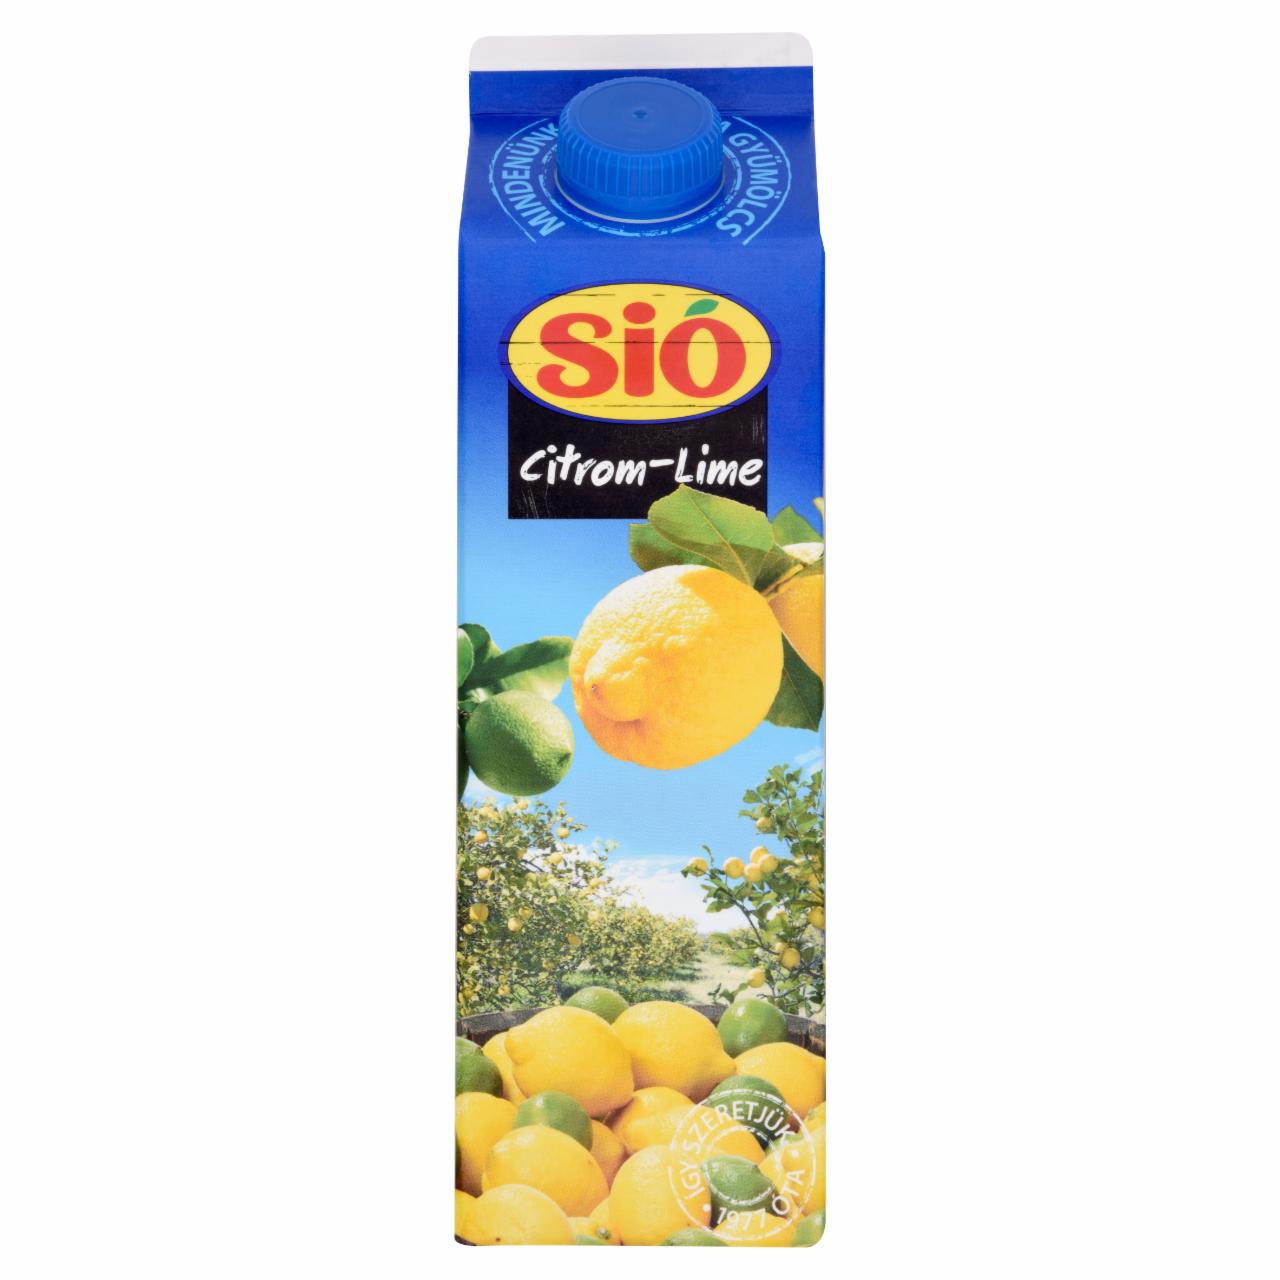 Képek - Sió citrom-lime ital 1 l